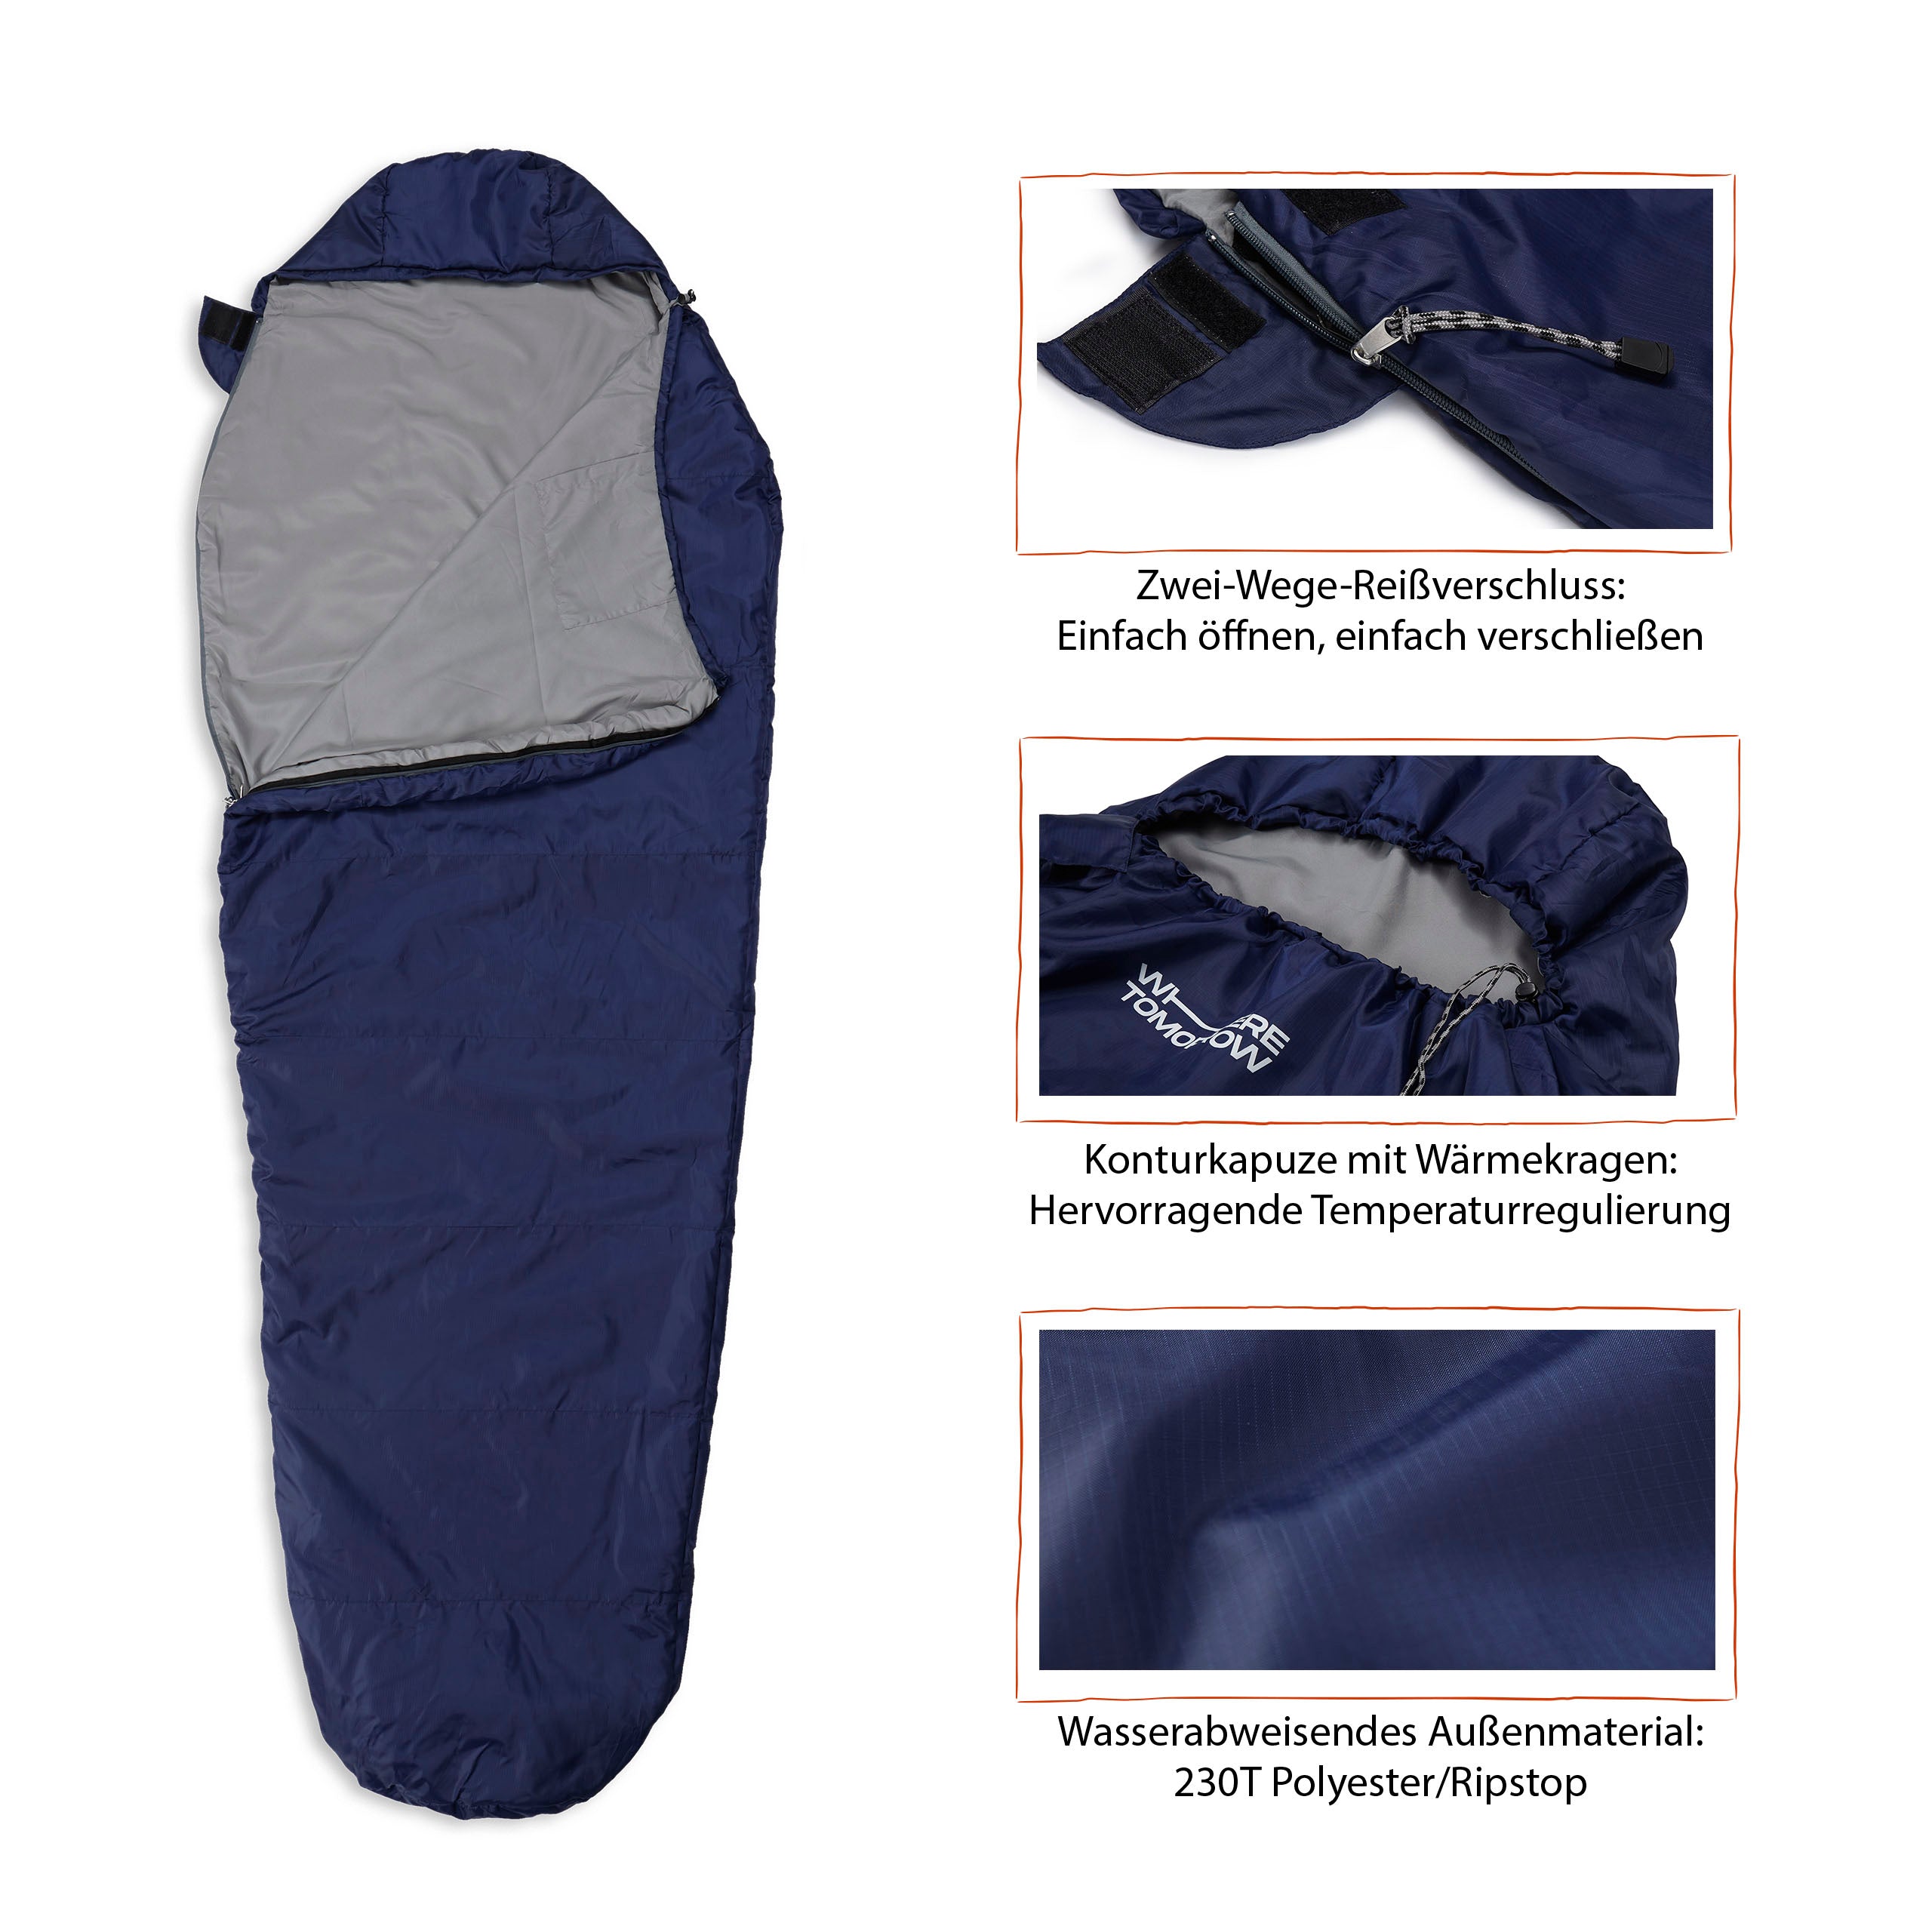 Camping Schlafsack Small & Light - Mumienschlafsack mit Tasche - 220 x 80 x 50 cm - Navyblau